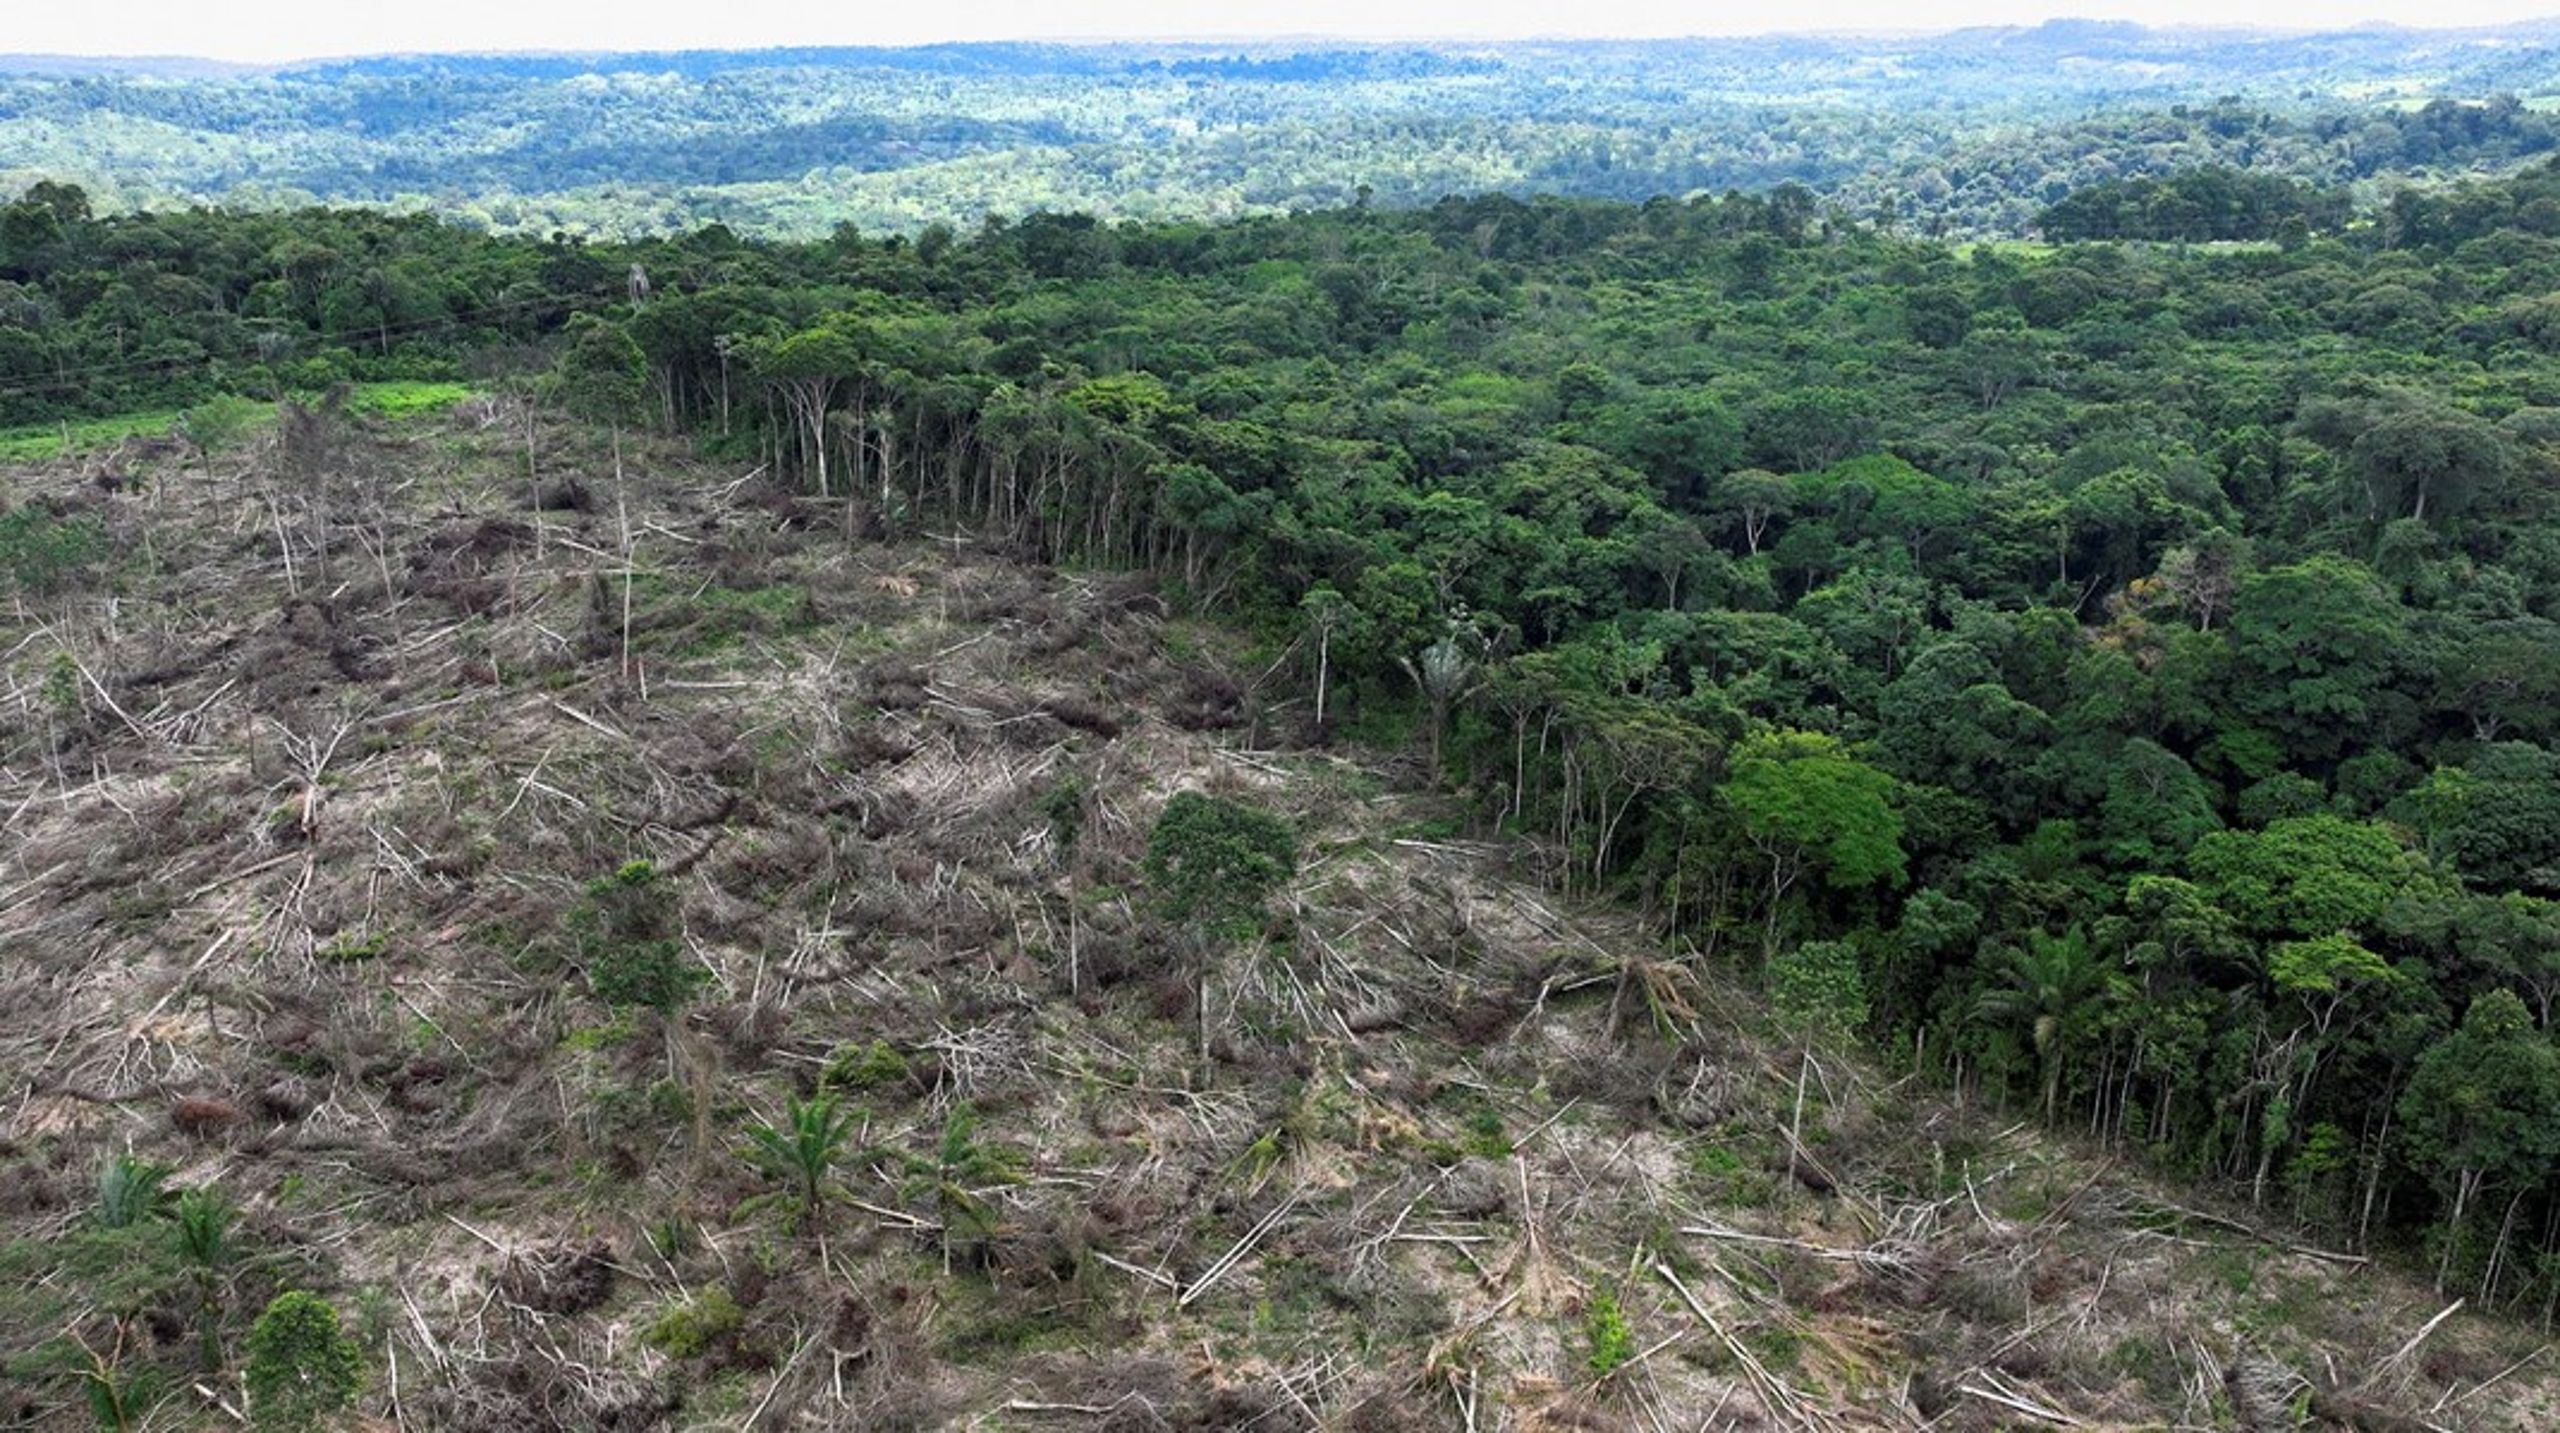 Skovene bliver ikke ryddet
i de lande, som producerer soja, palmeolie og kaffe, uden efterspørgsel på&nbsp;varerne&nbsp;fra lande som Danmark, skriver de grønne organisationers&nbsp;repræsentanter.